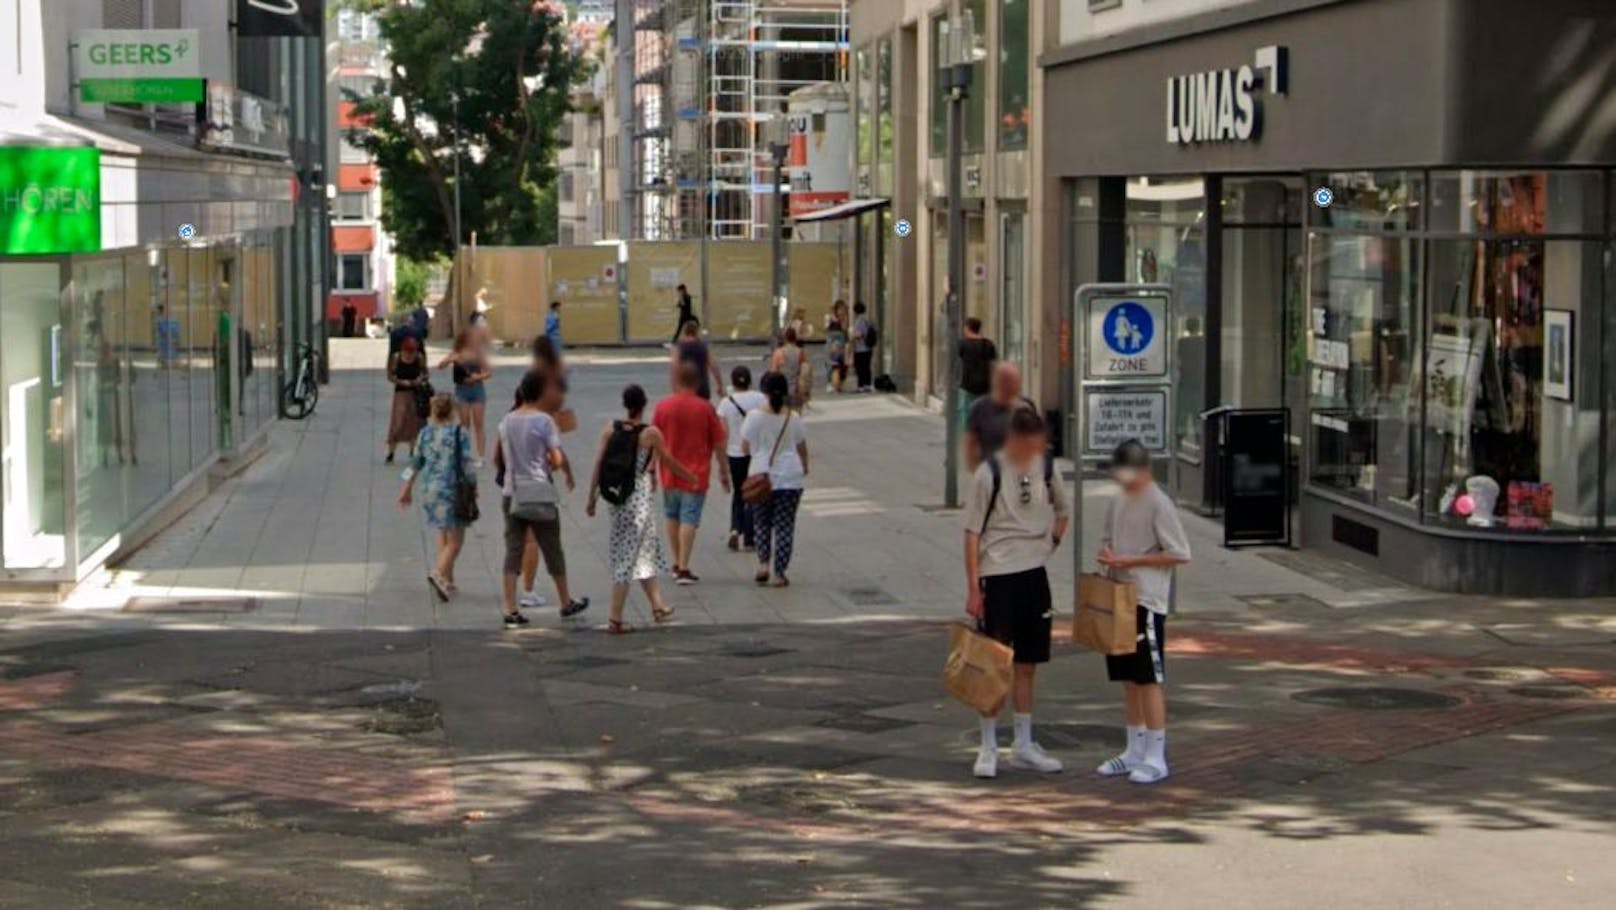 Männer-Gruppe vergewaltigt Frau mitten in Stuttgarter City